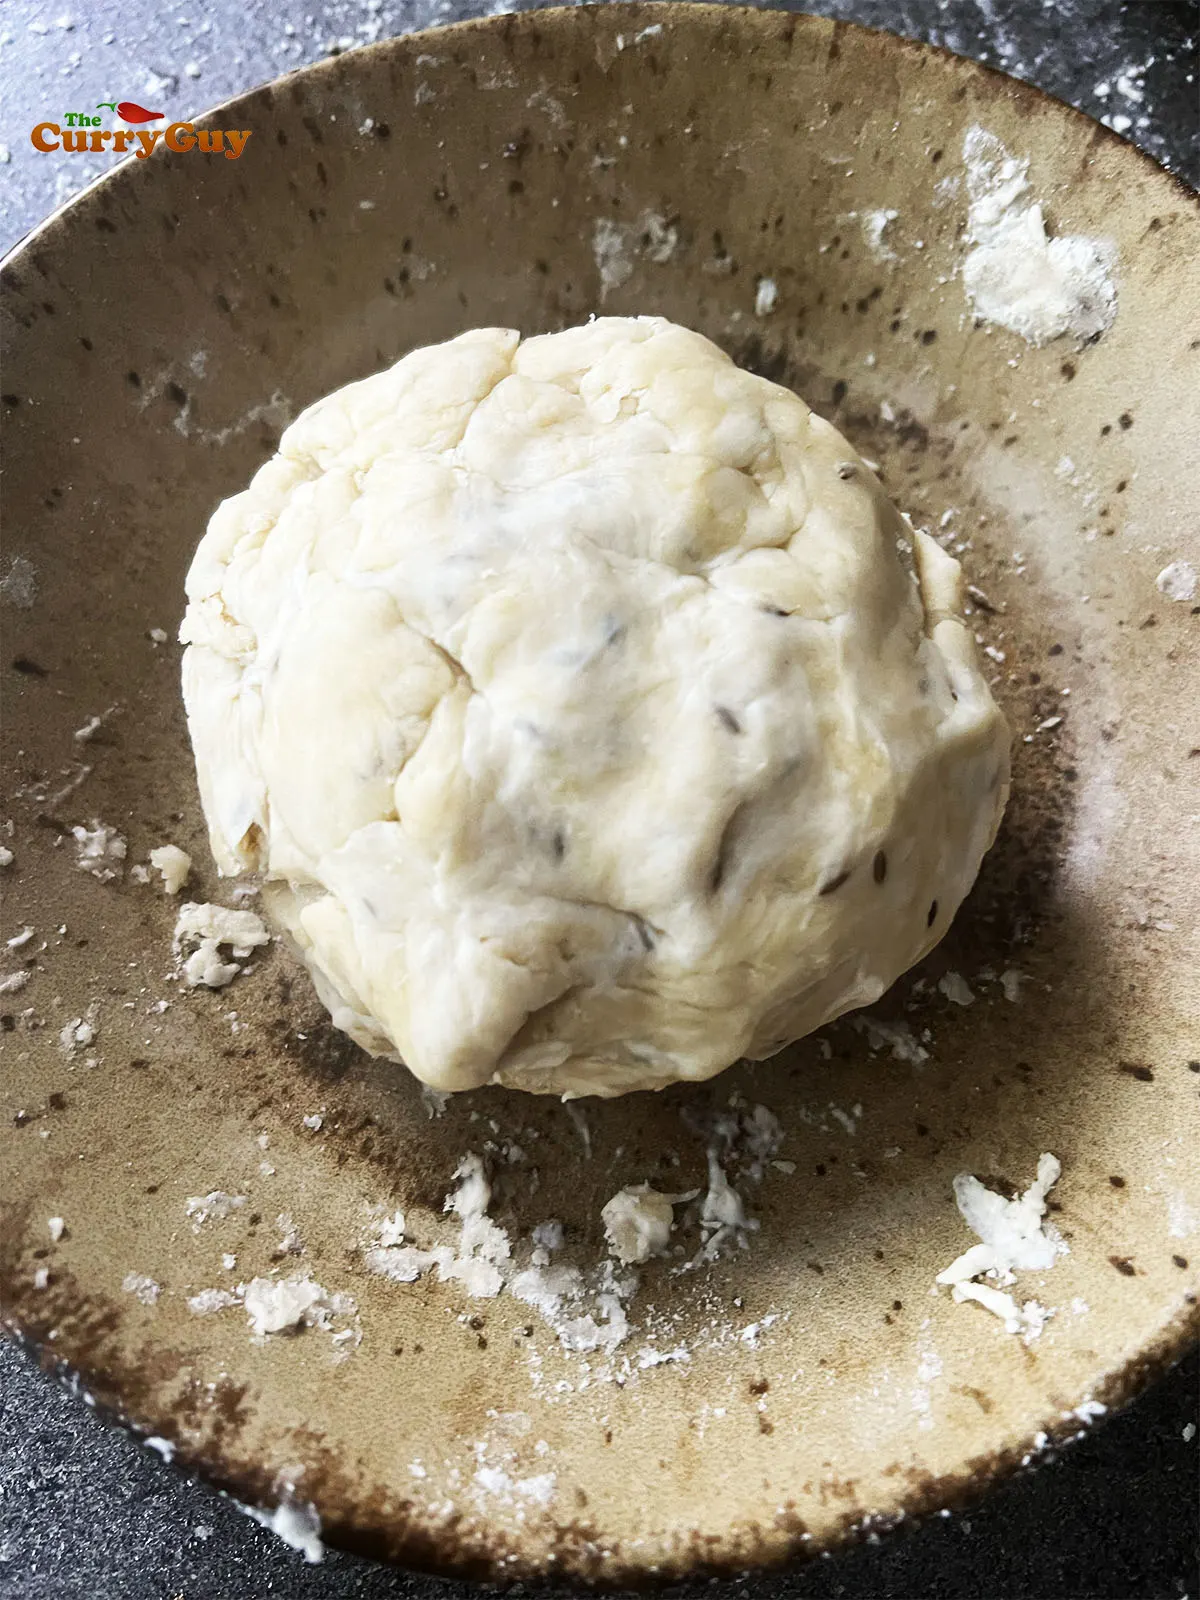 The kneaded dough ball.